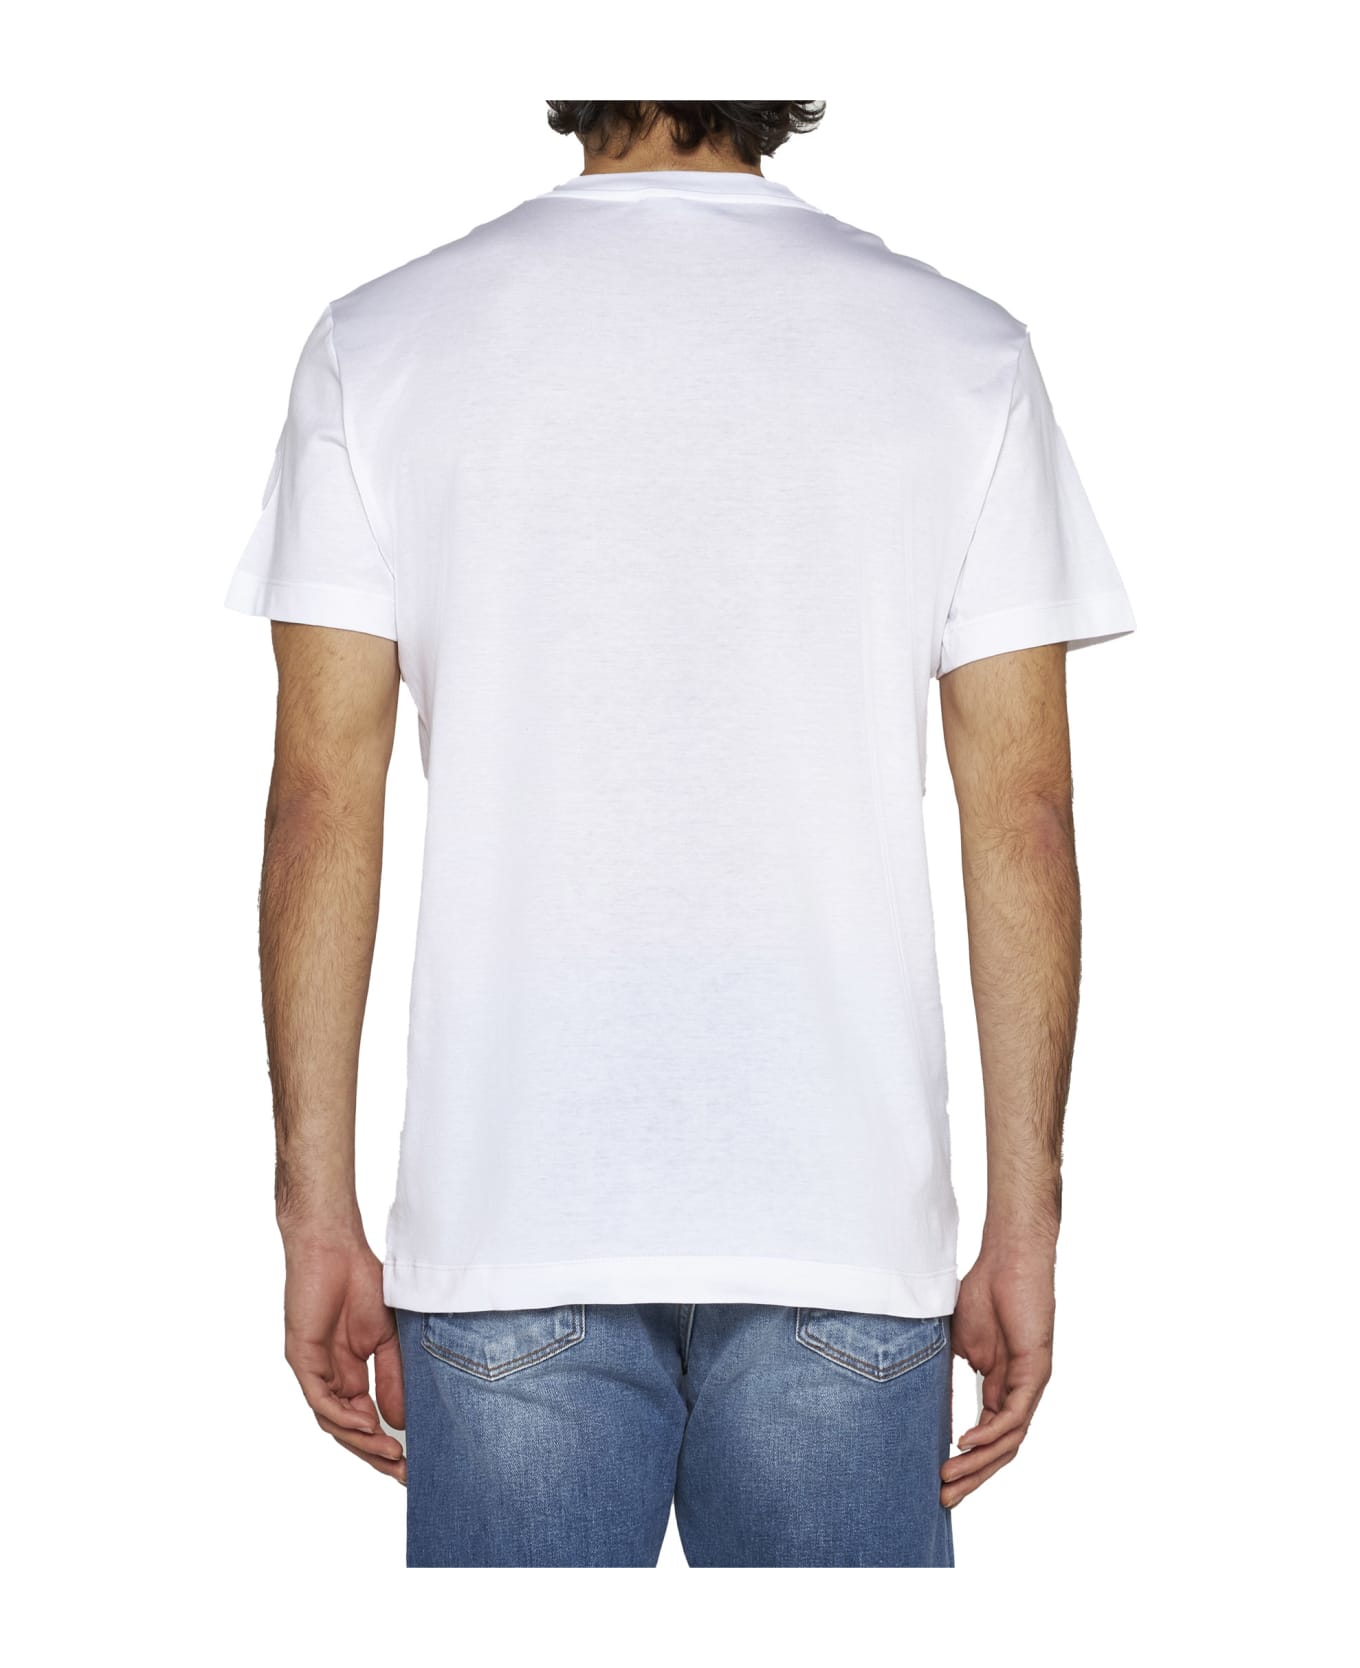 Dolce & Gabbana T-shirt Con Ricamo Logo - Bianco ottico